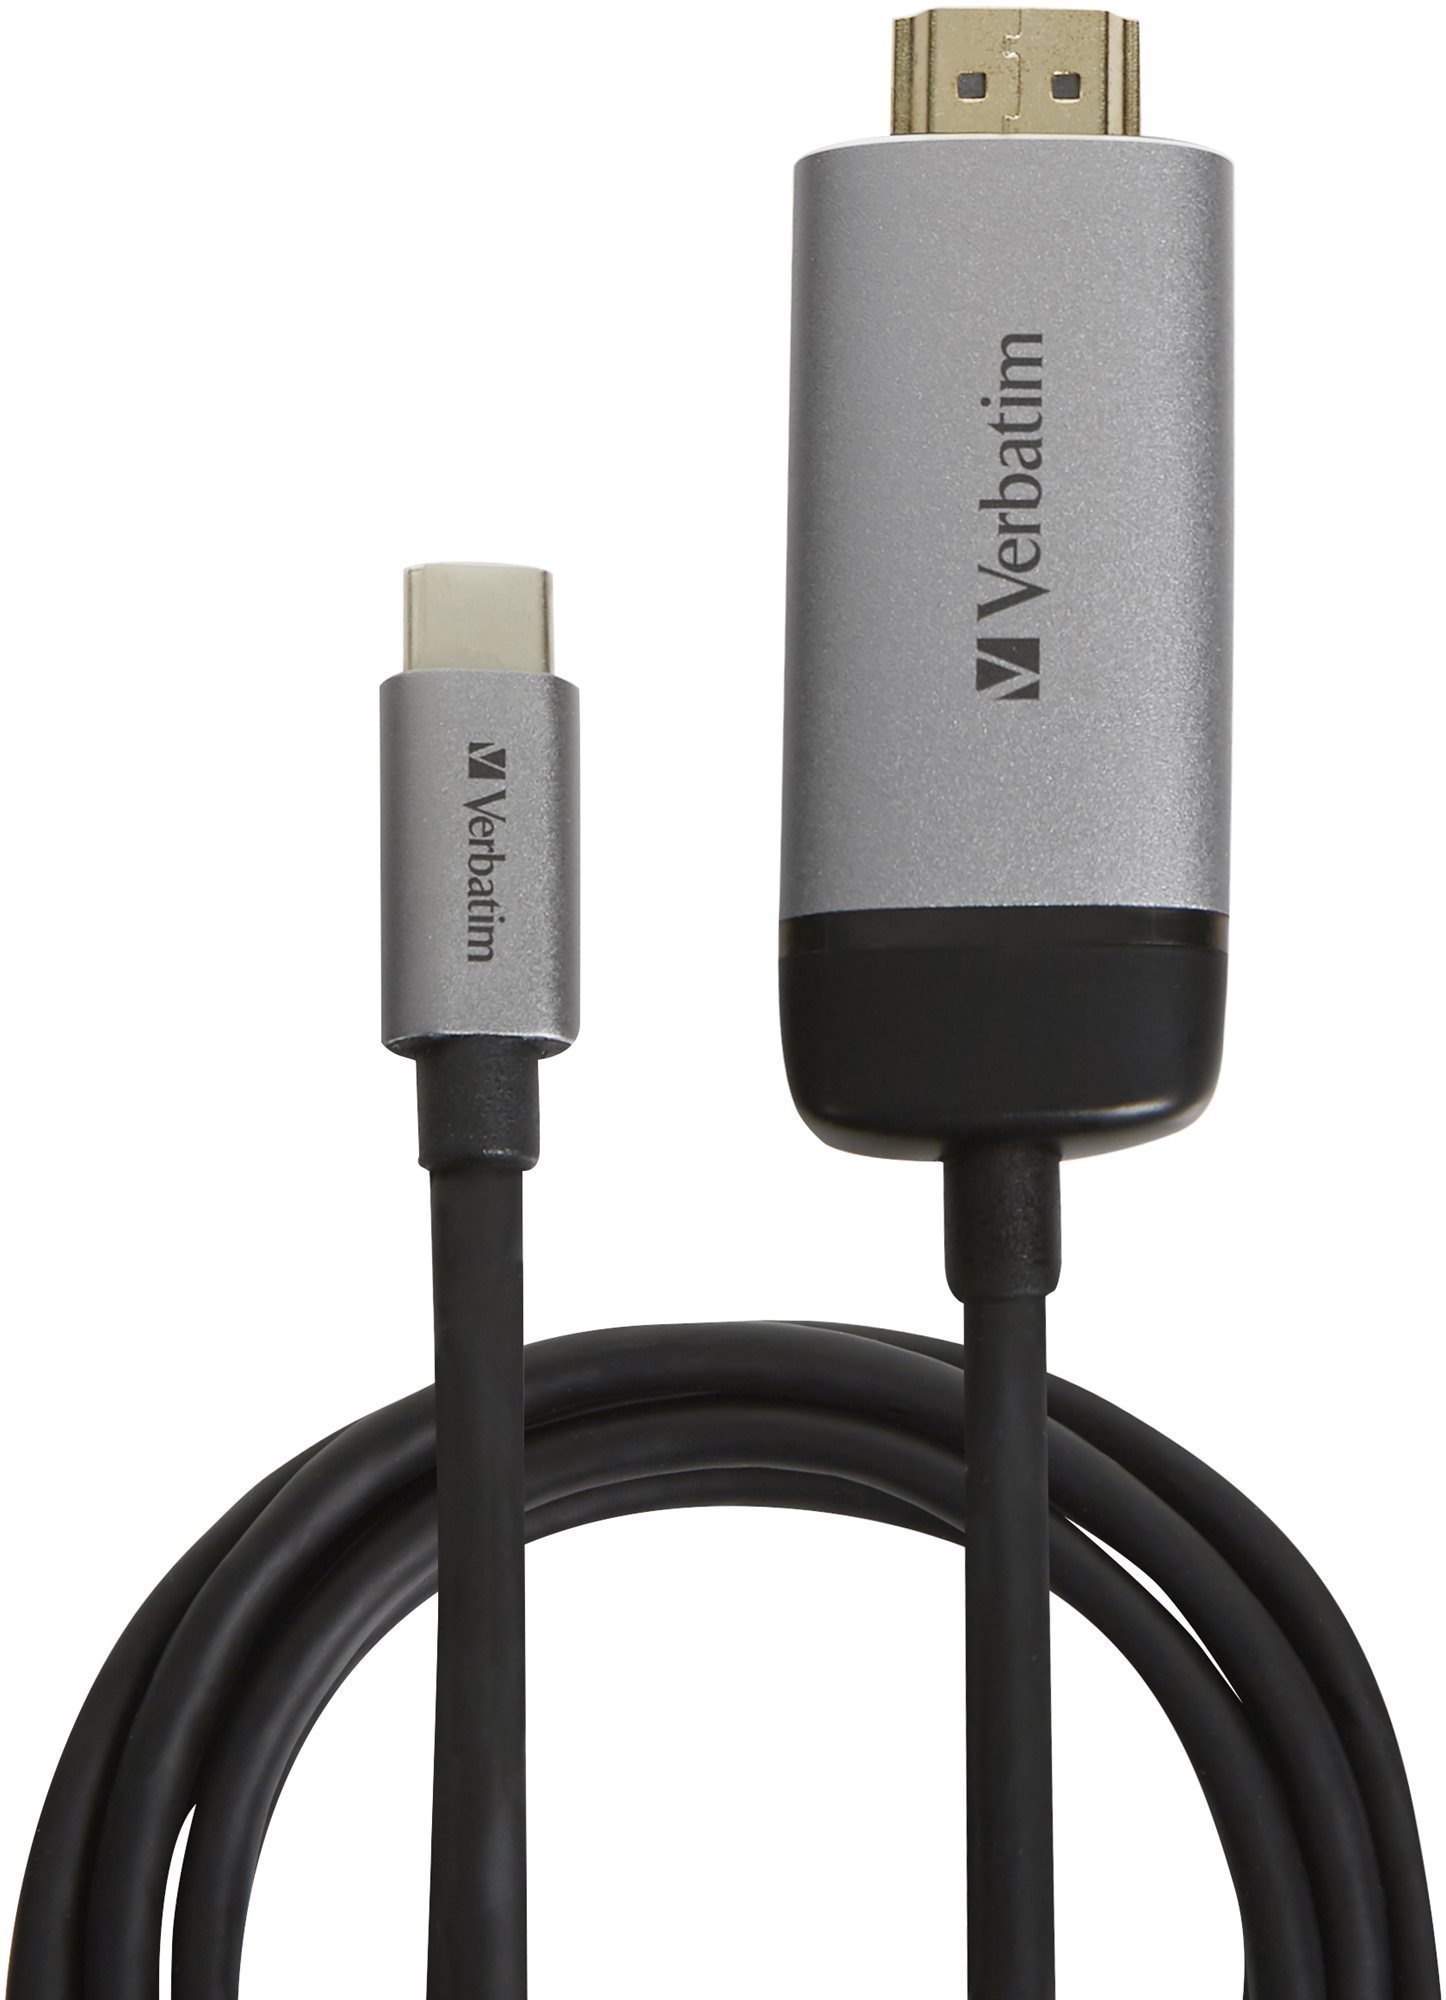 VERBATIM USB-C TO HDMI 4K ADAPTER - USB 3.1 GEN 1/ HDMI, 1,5 m